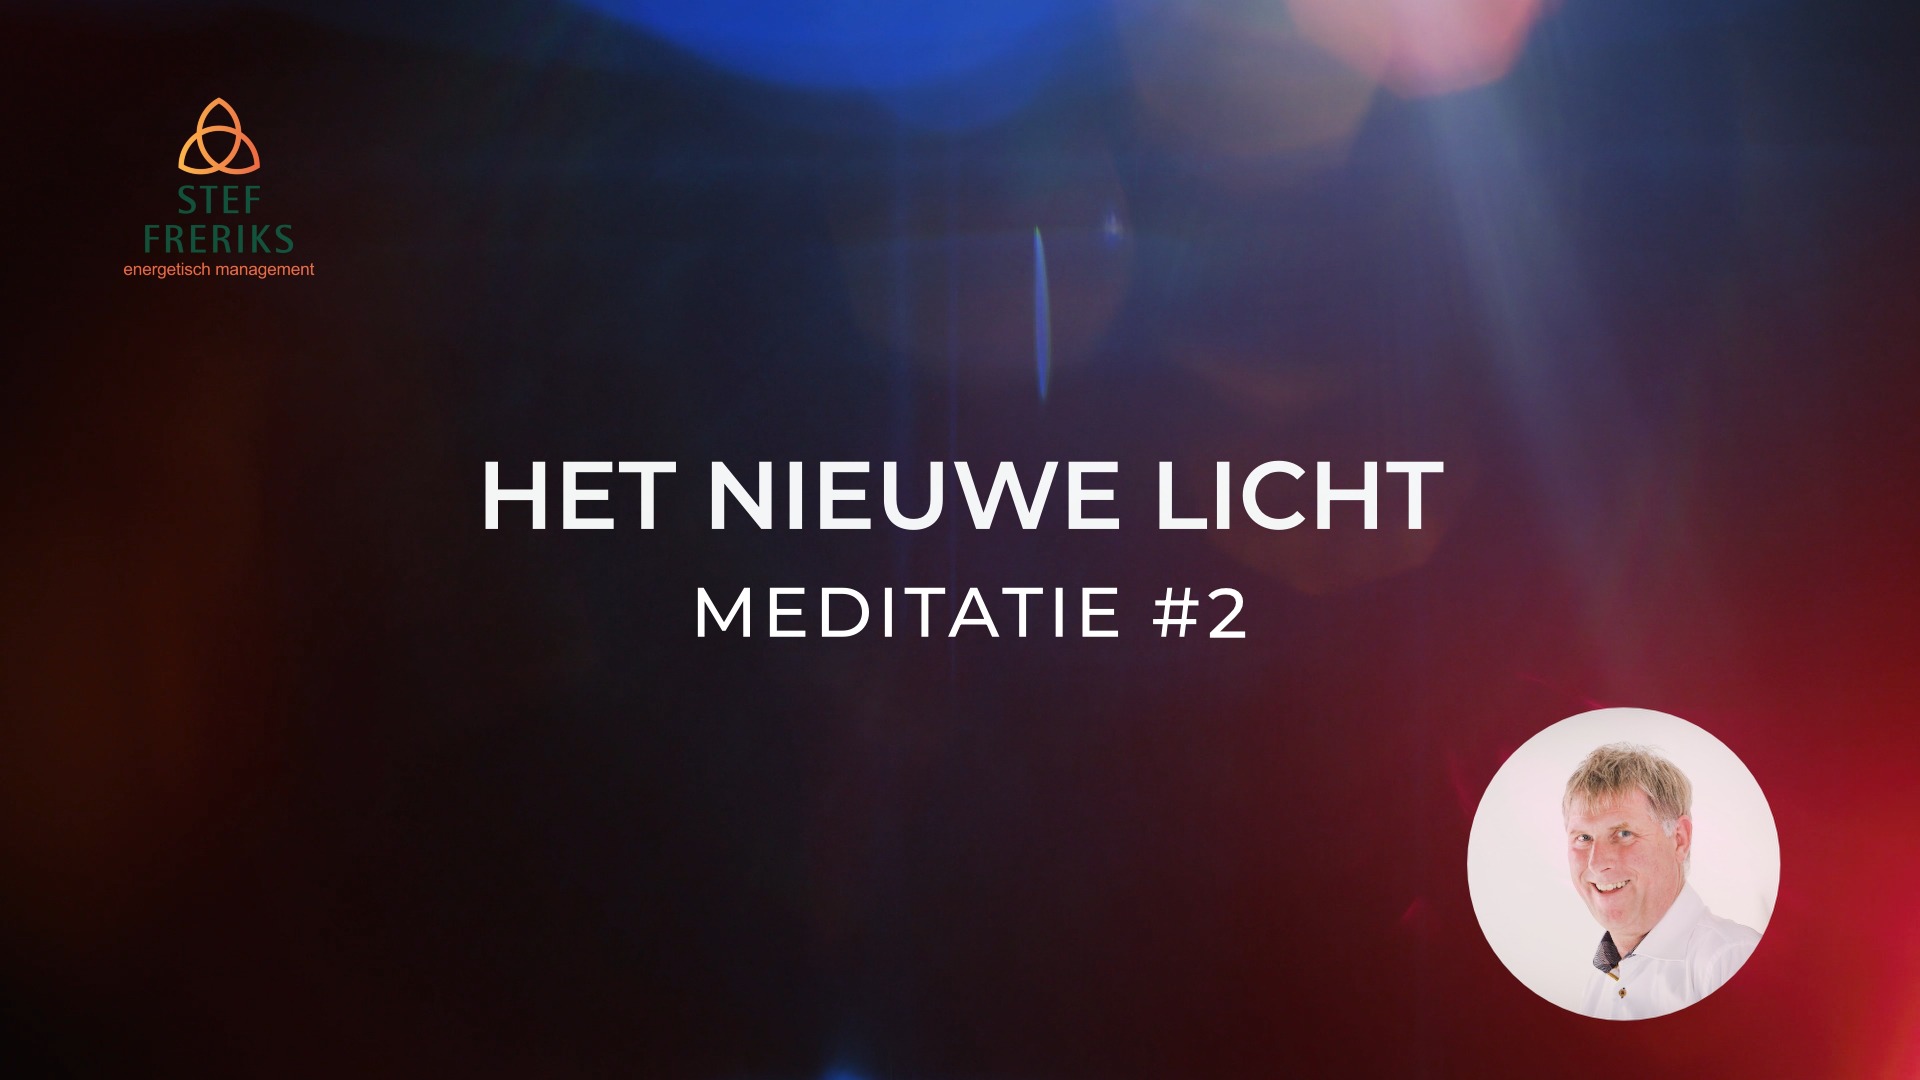 Meditatie #2